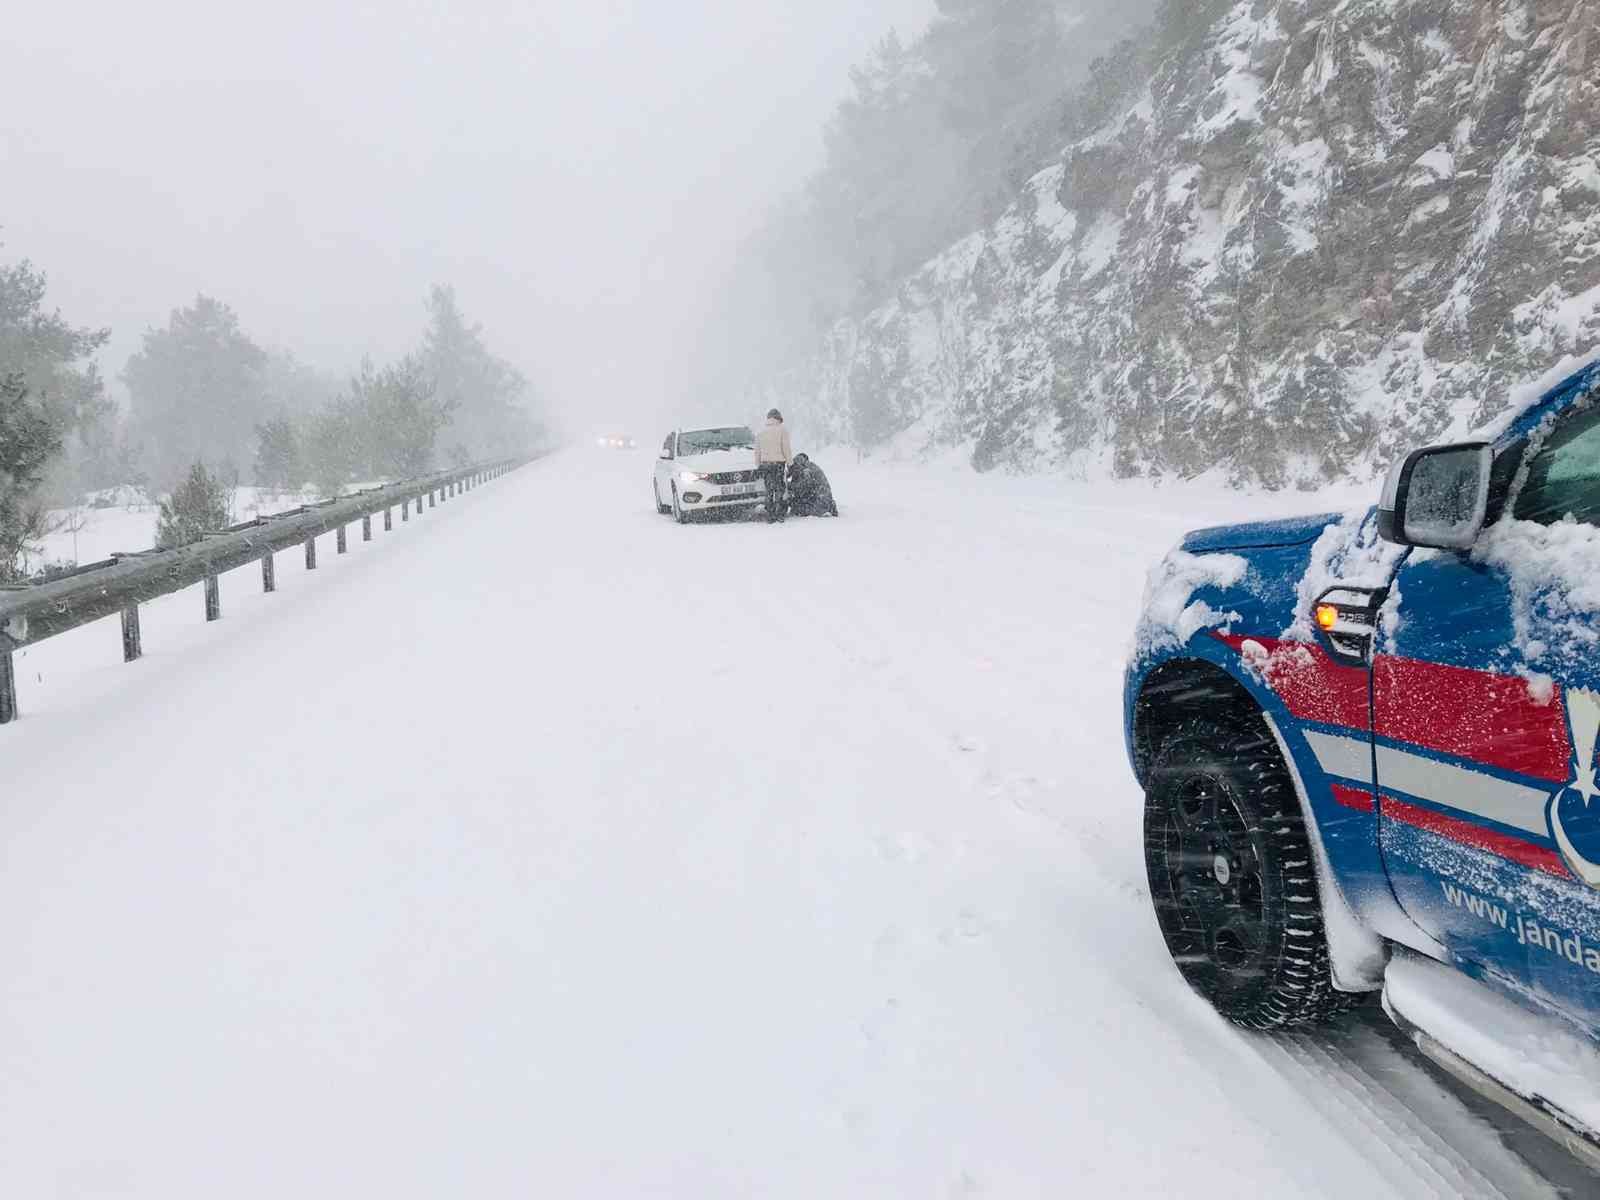 Antalya’da karda mahsur kalan 14 araç ve 32 vatandaş jandarma tarafından kurtarıldı #antalya